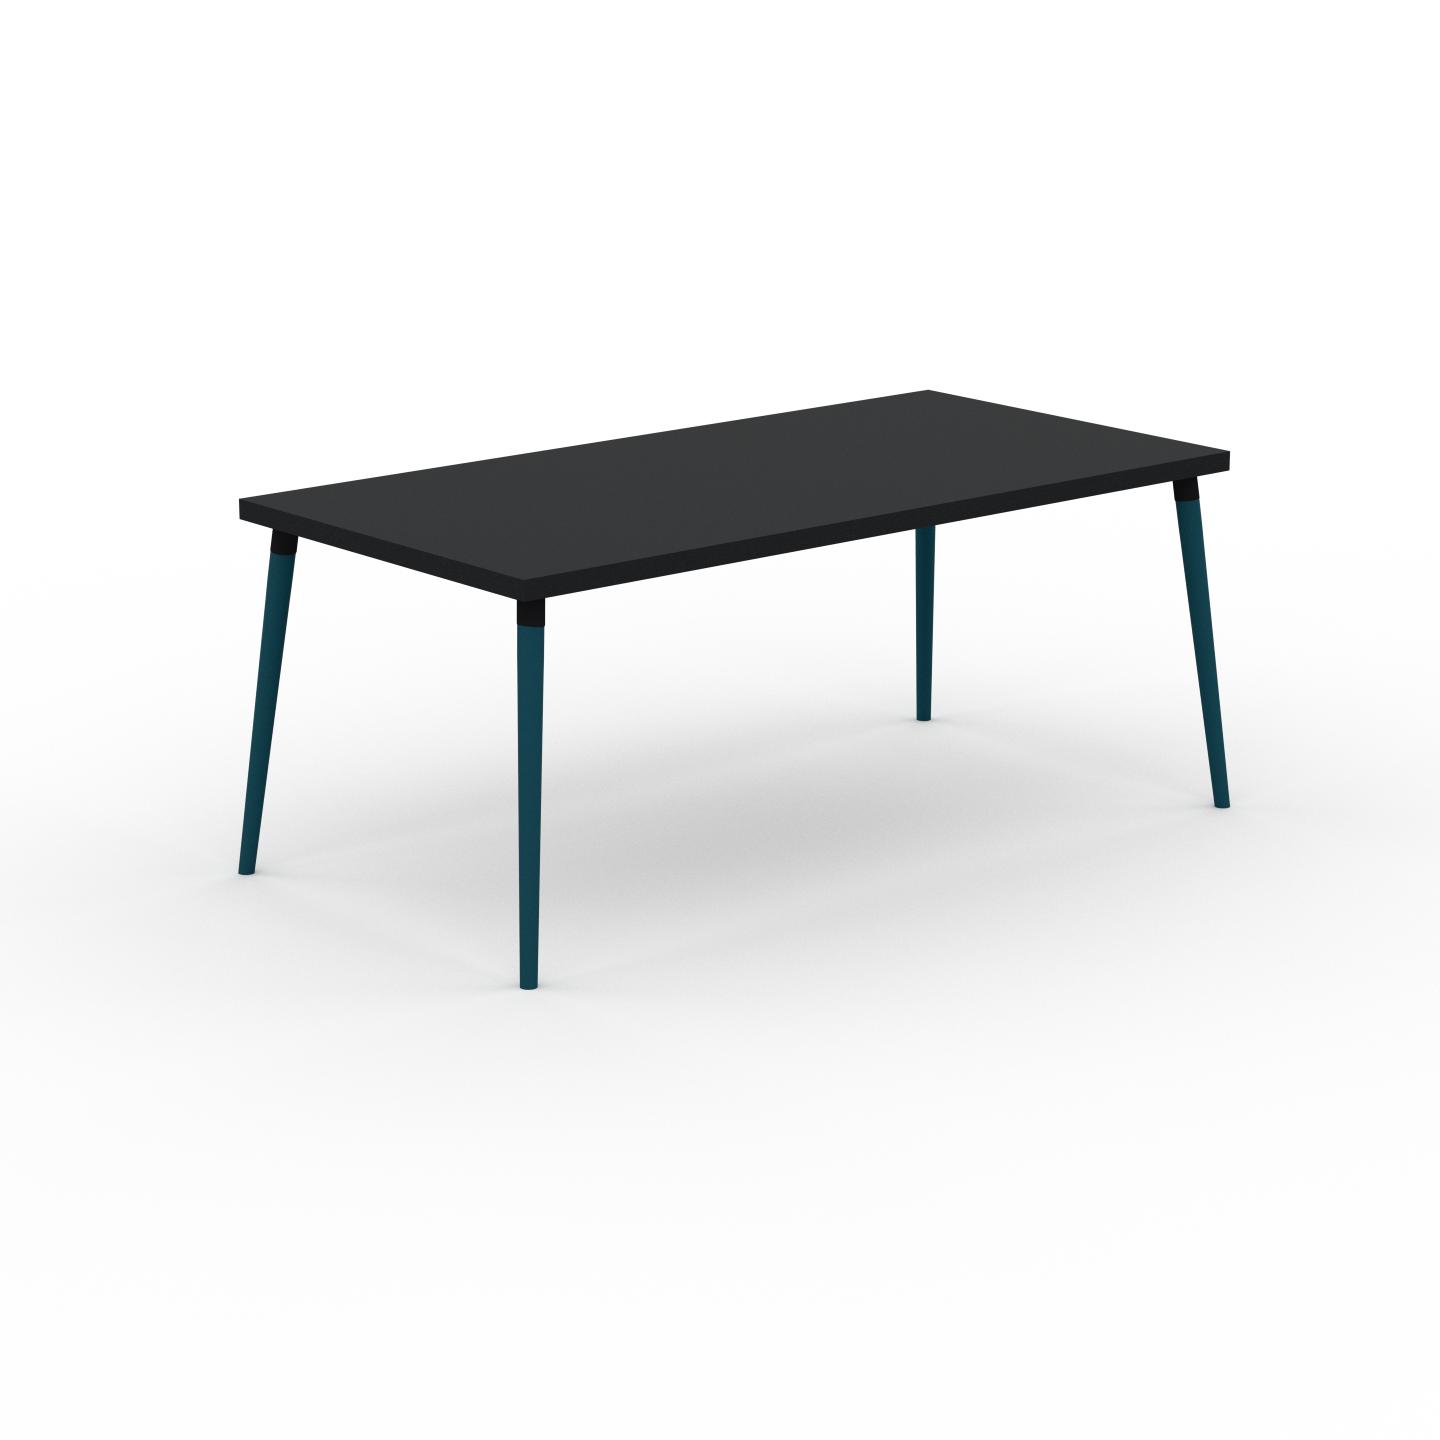 MYCS Schreibtisch Massivholz Schwarz - Moderner Massivholz-Schreibtisch: Einzigartiges Design - 180 x 75 x 90 cm, konfigurierbar